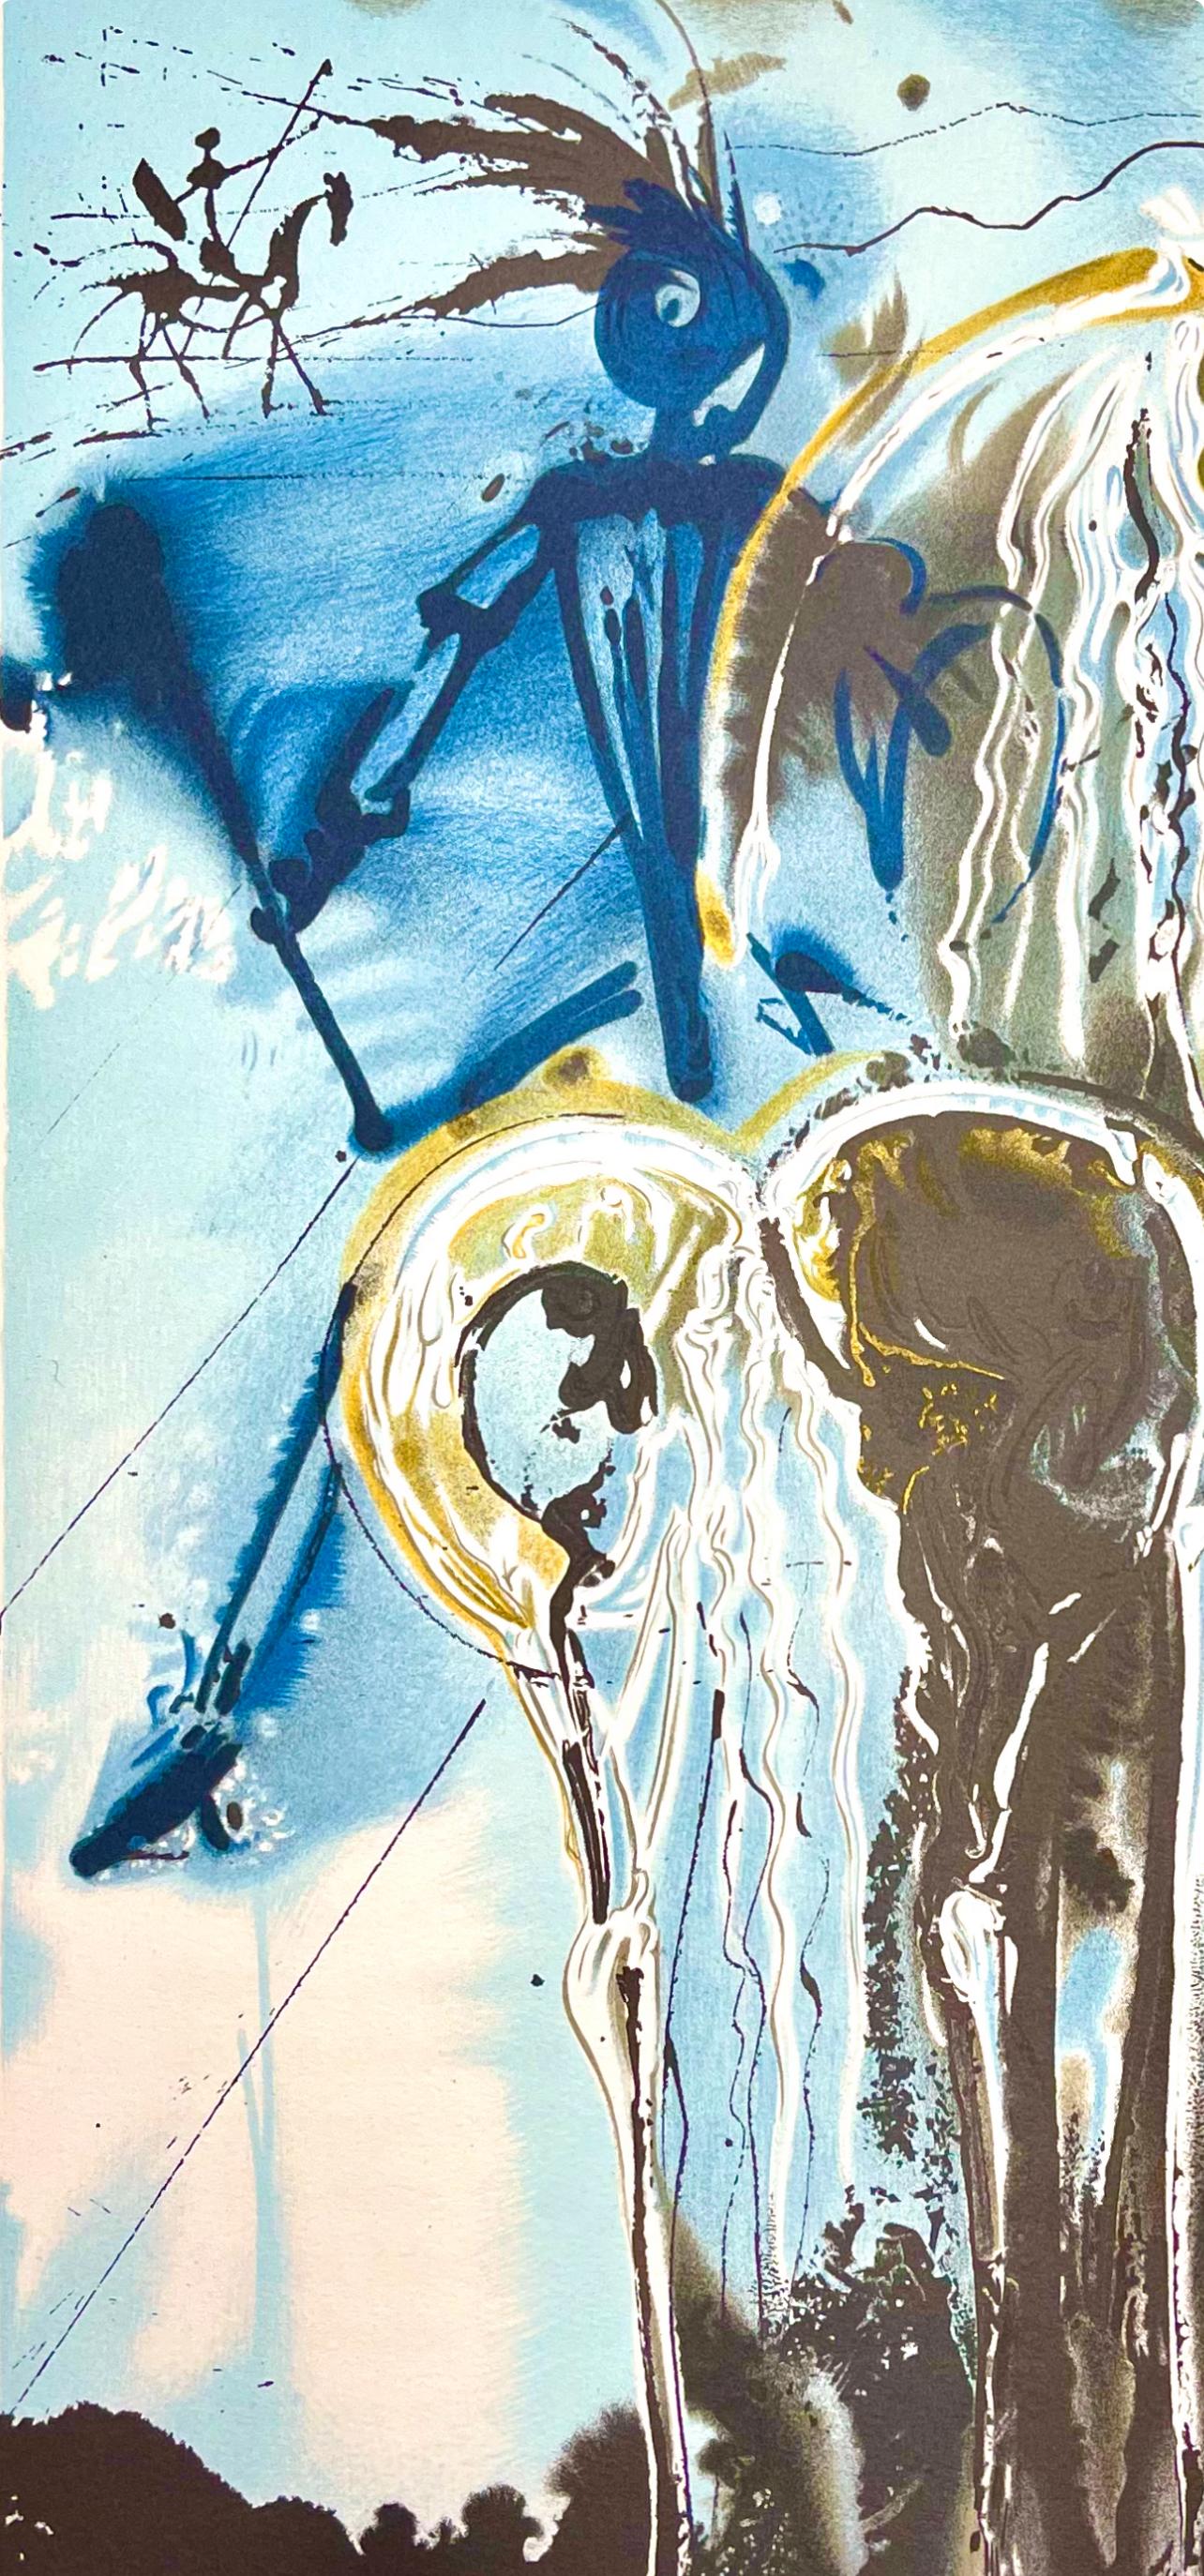 Dalí, Don Quichotte, Les Chevaux de Dali (dopo) - Print Surrealismo di Salvador Dalí